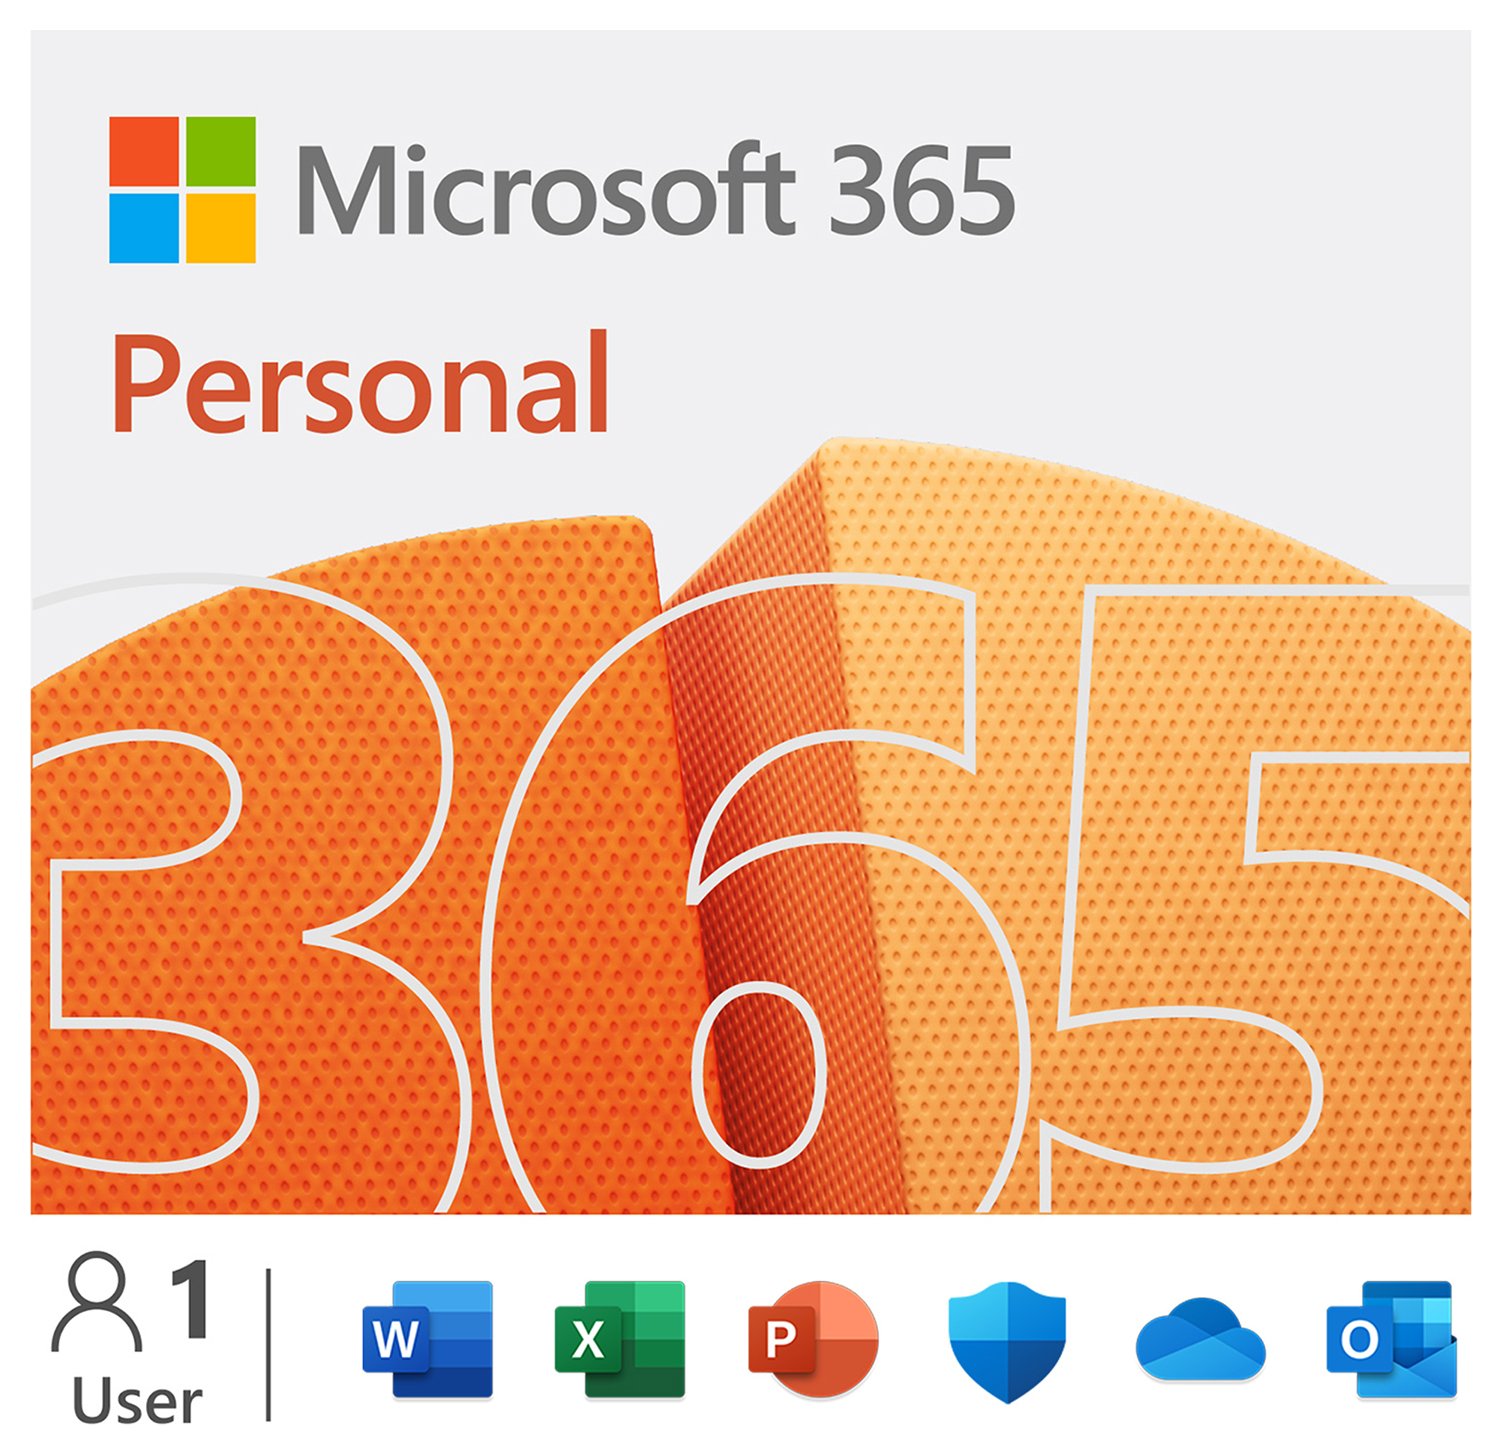 Microsoft 365 Personal 1 Year 1 User Digital Download